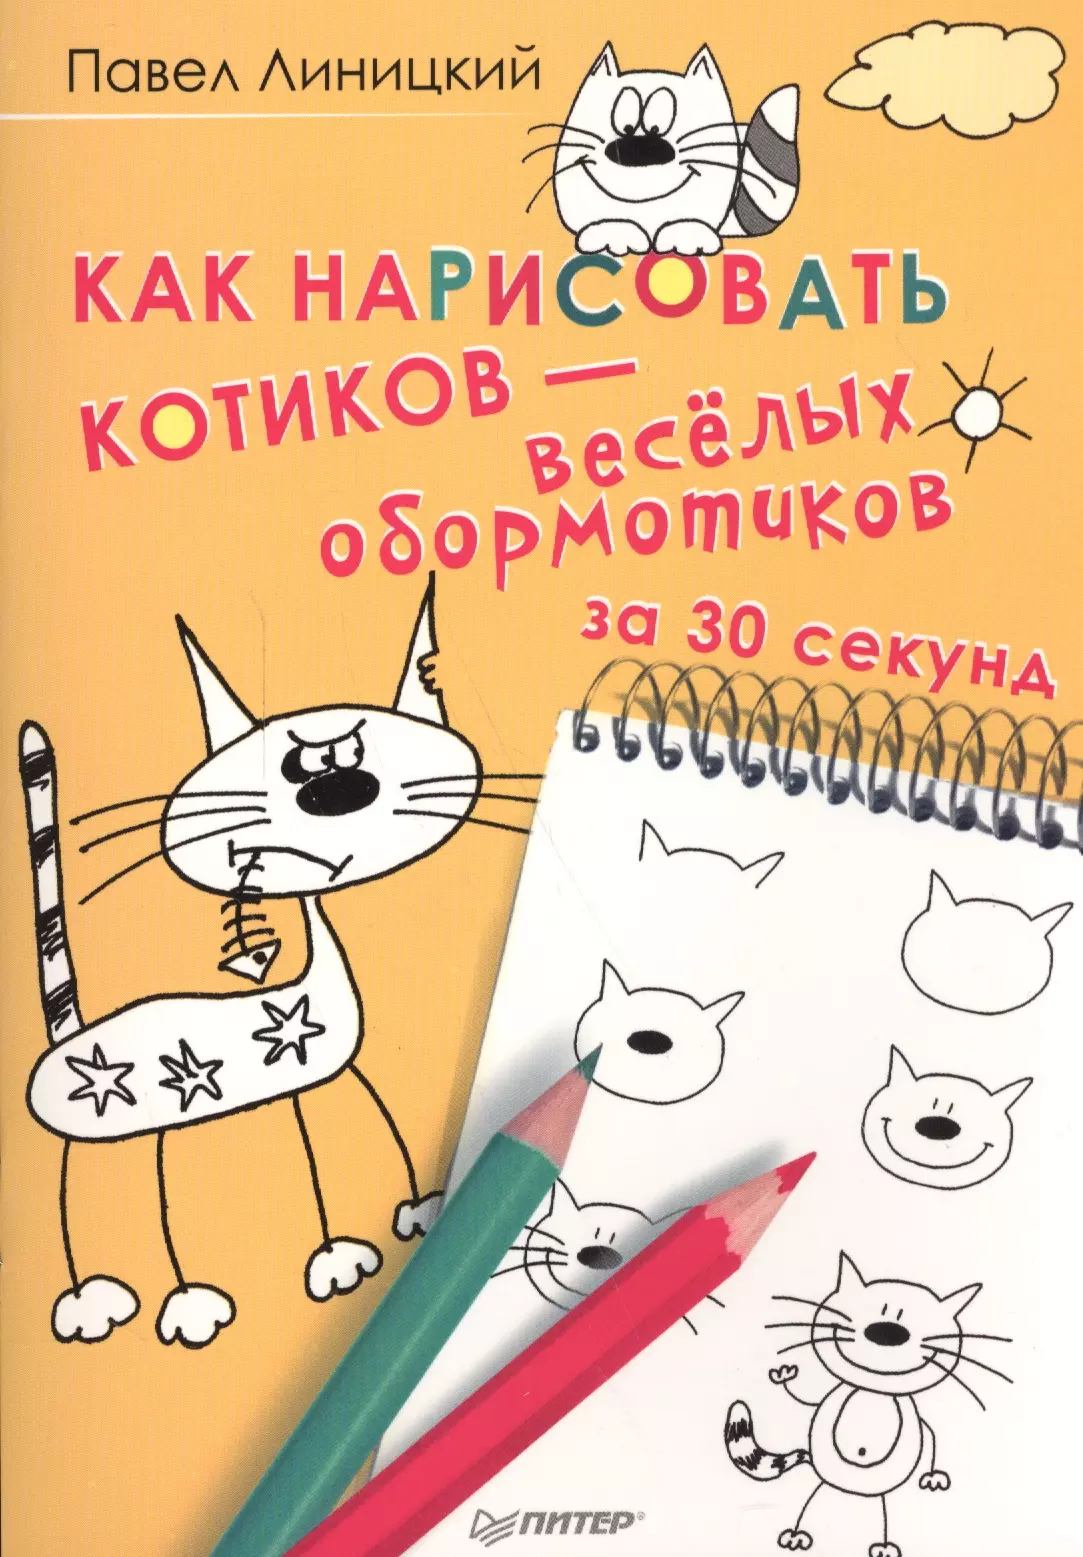 Линицкий Павел Сергеевич Как нарисовать котиков — весёлых обормотиков за 30 секунд